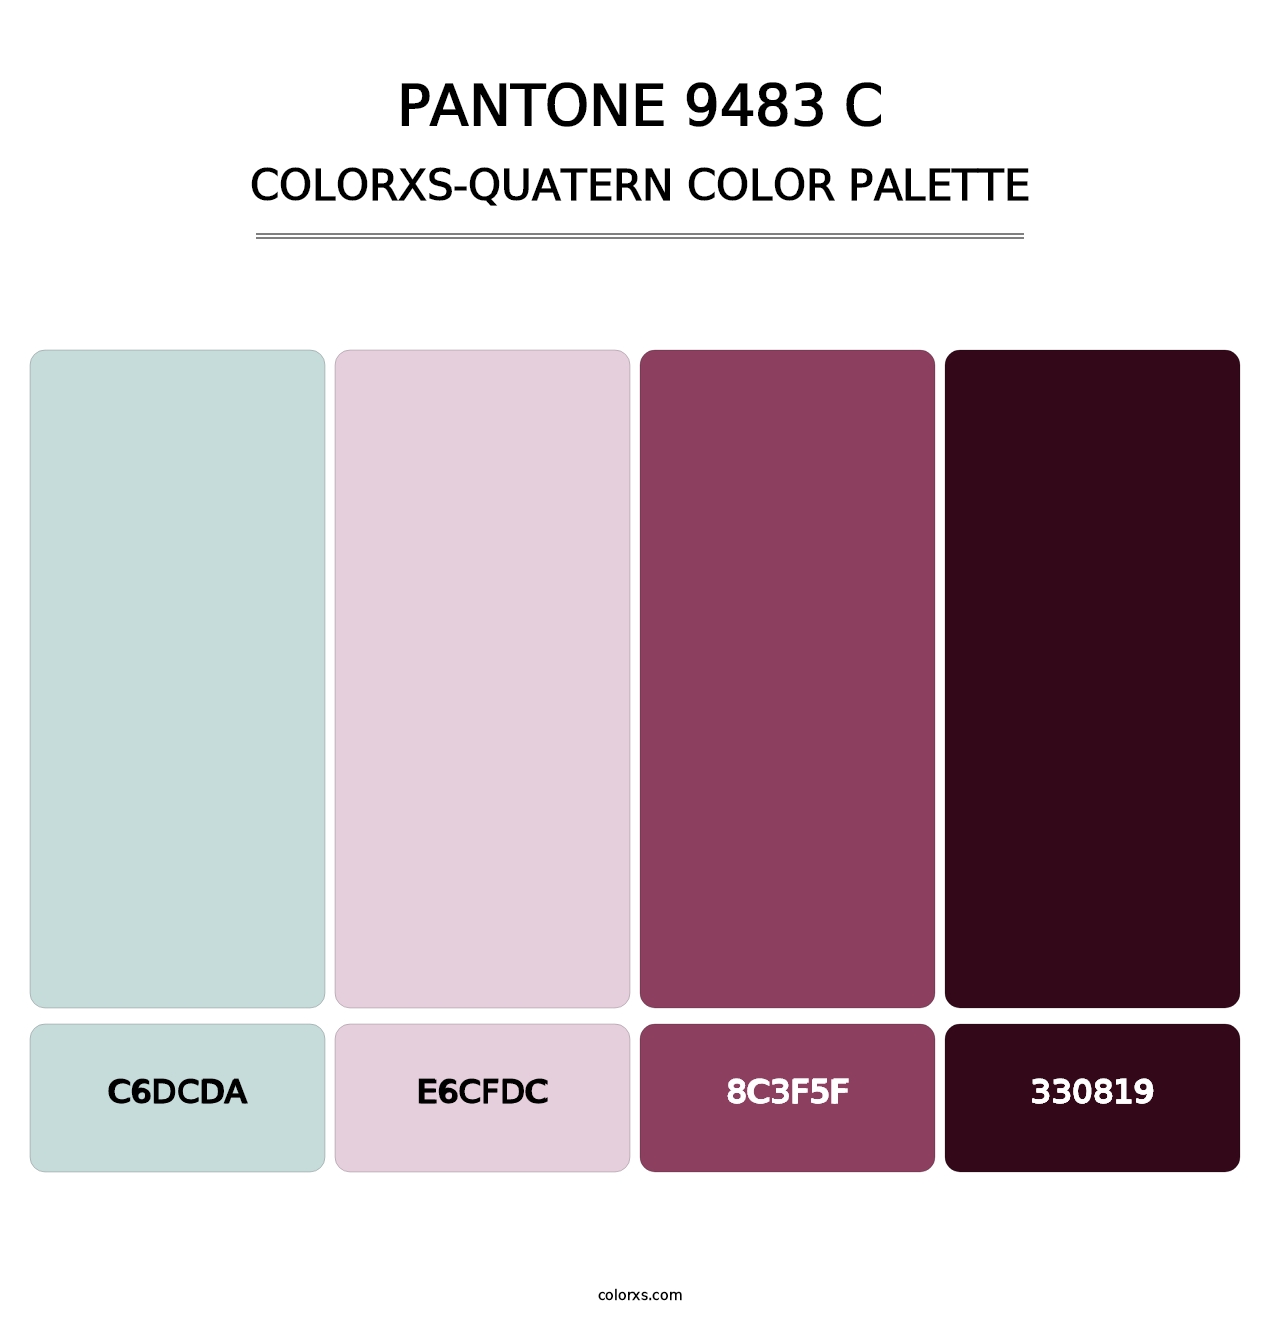 PANTONE 9483 C - Colorxs Quatern Palette